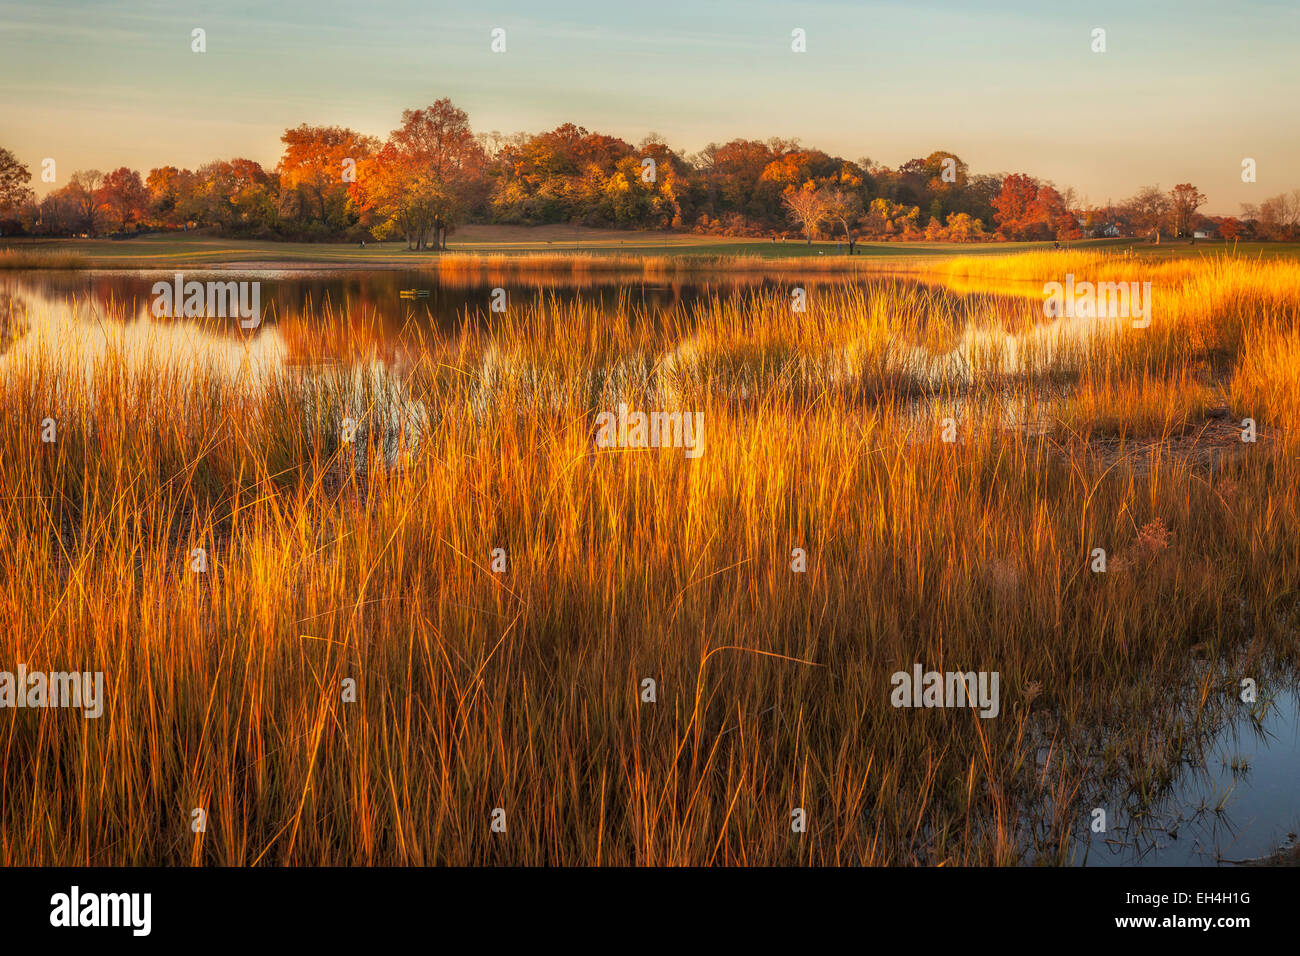 Tall golden grass surrounding a pond on an autumn evening. Stock Photo